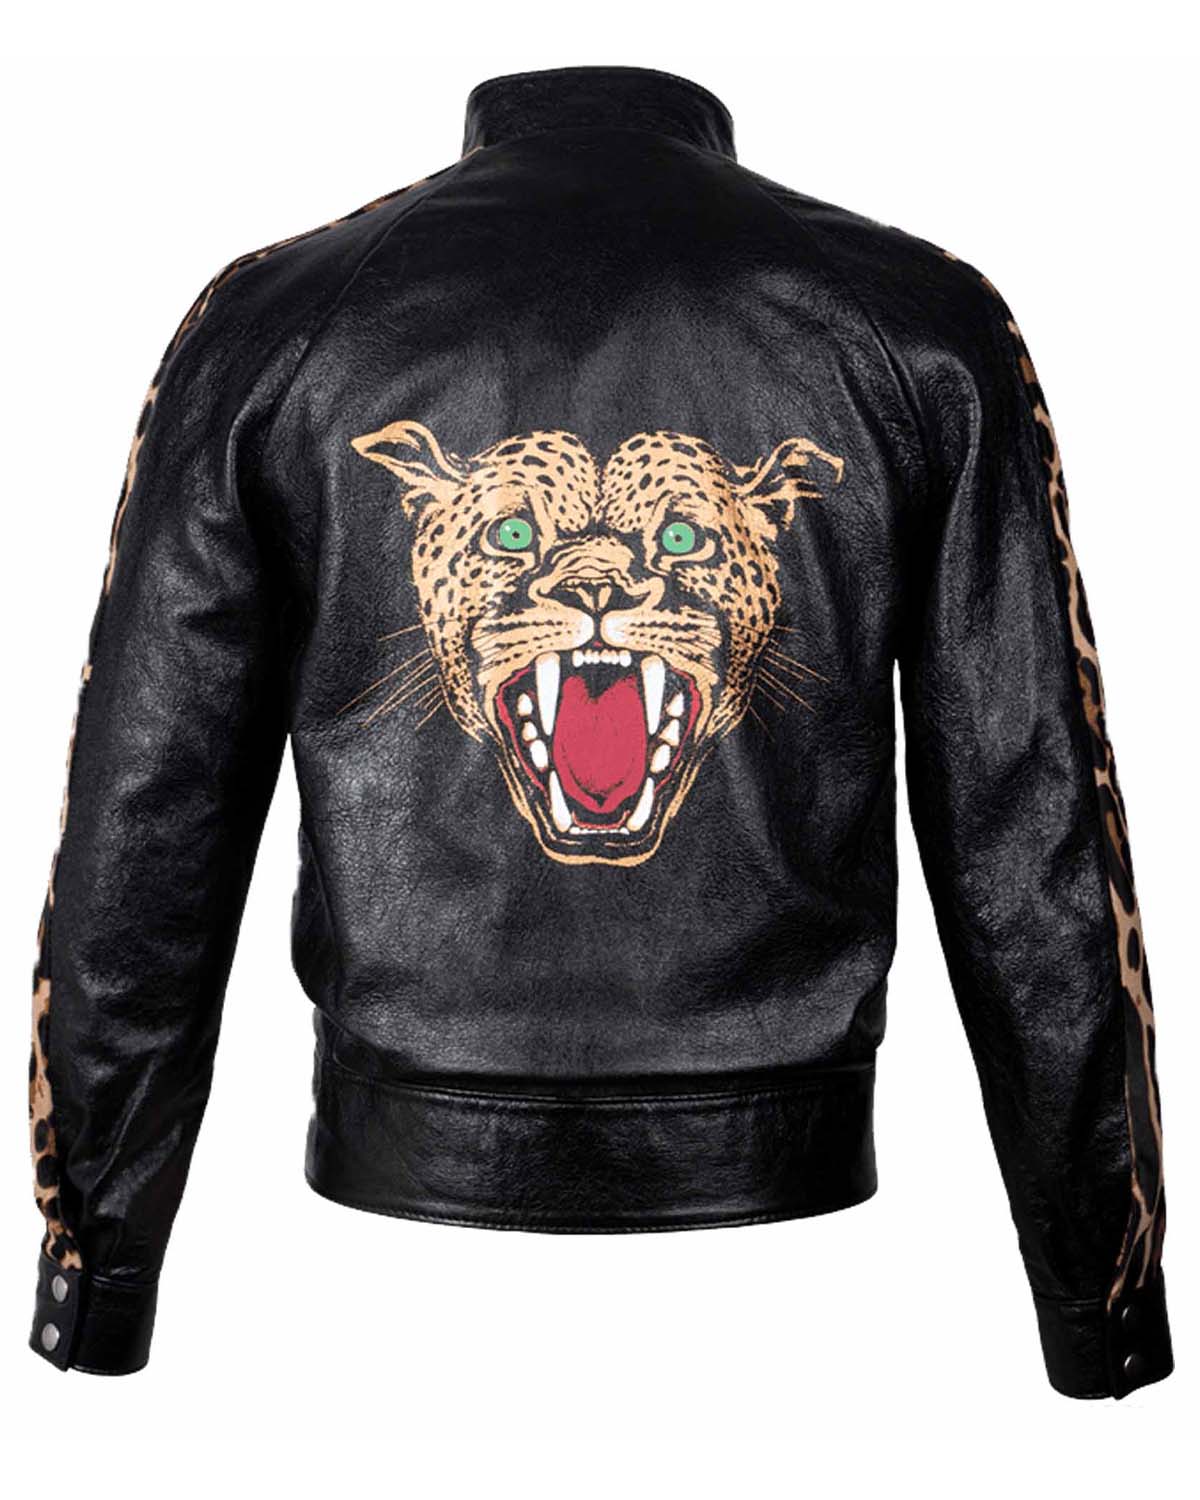 Elite Paradise Garage Jacket Cheetah Design Leather Jacket